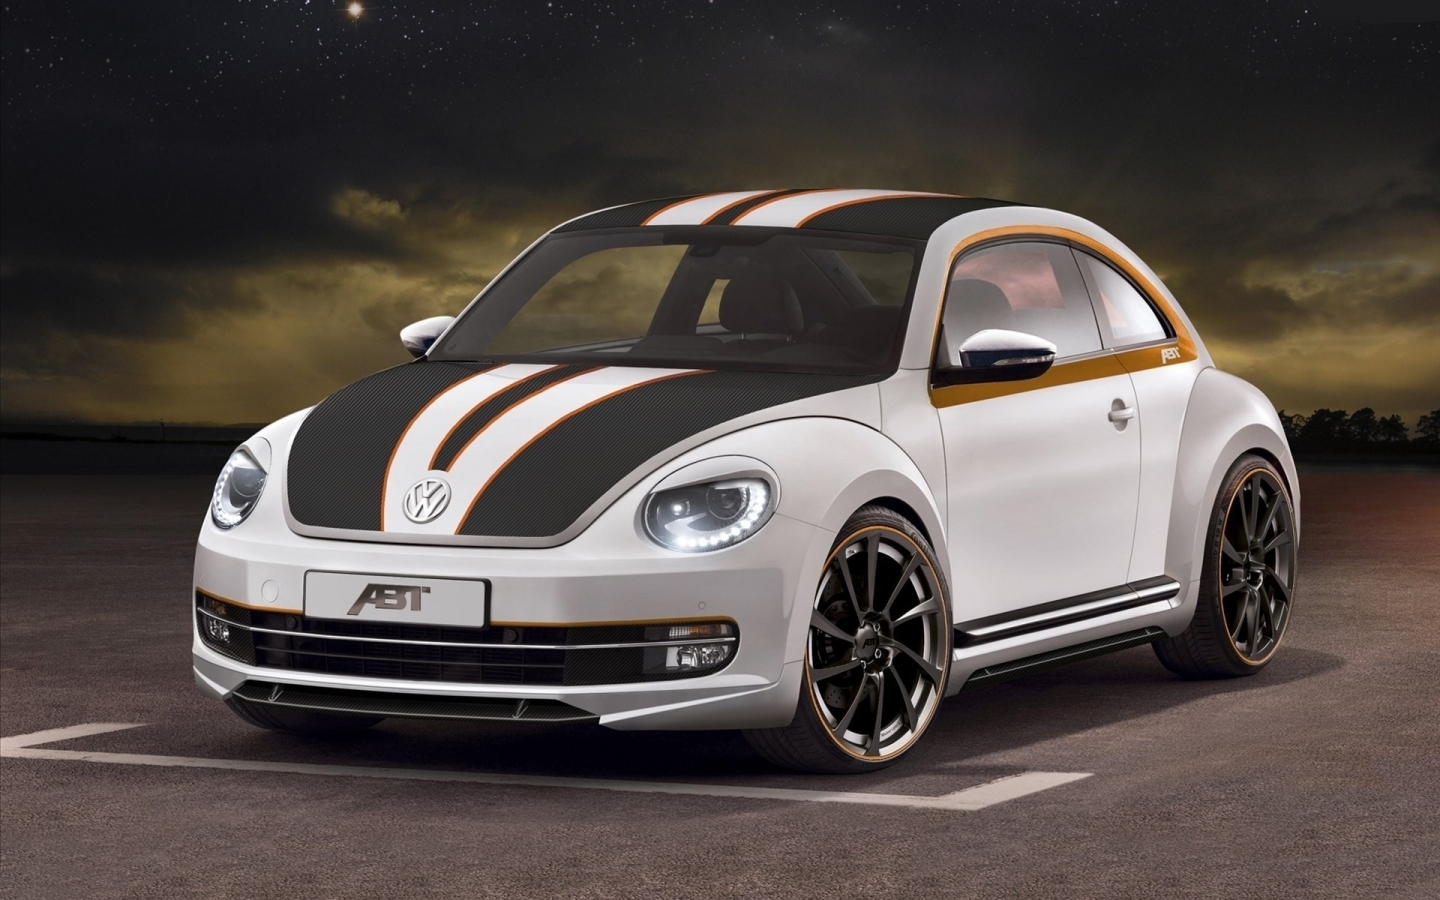 Volkswagen Beetle ABT Sportsline for 1440 x 900 widescreen resolution